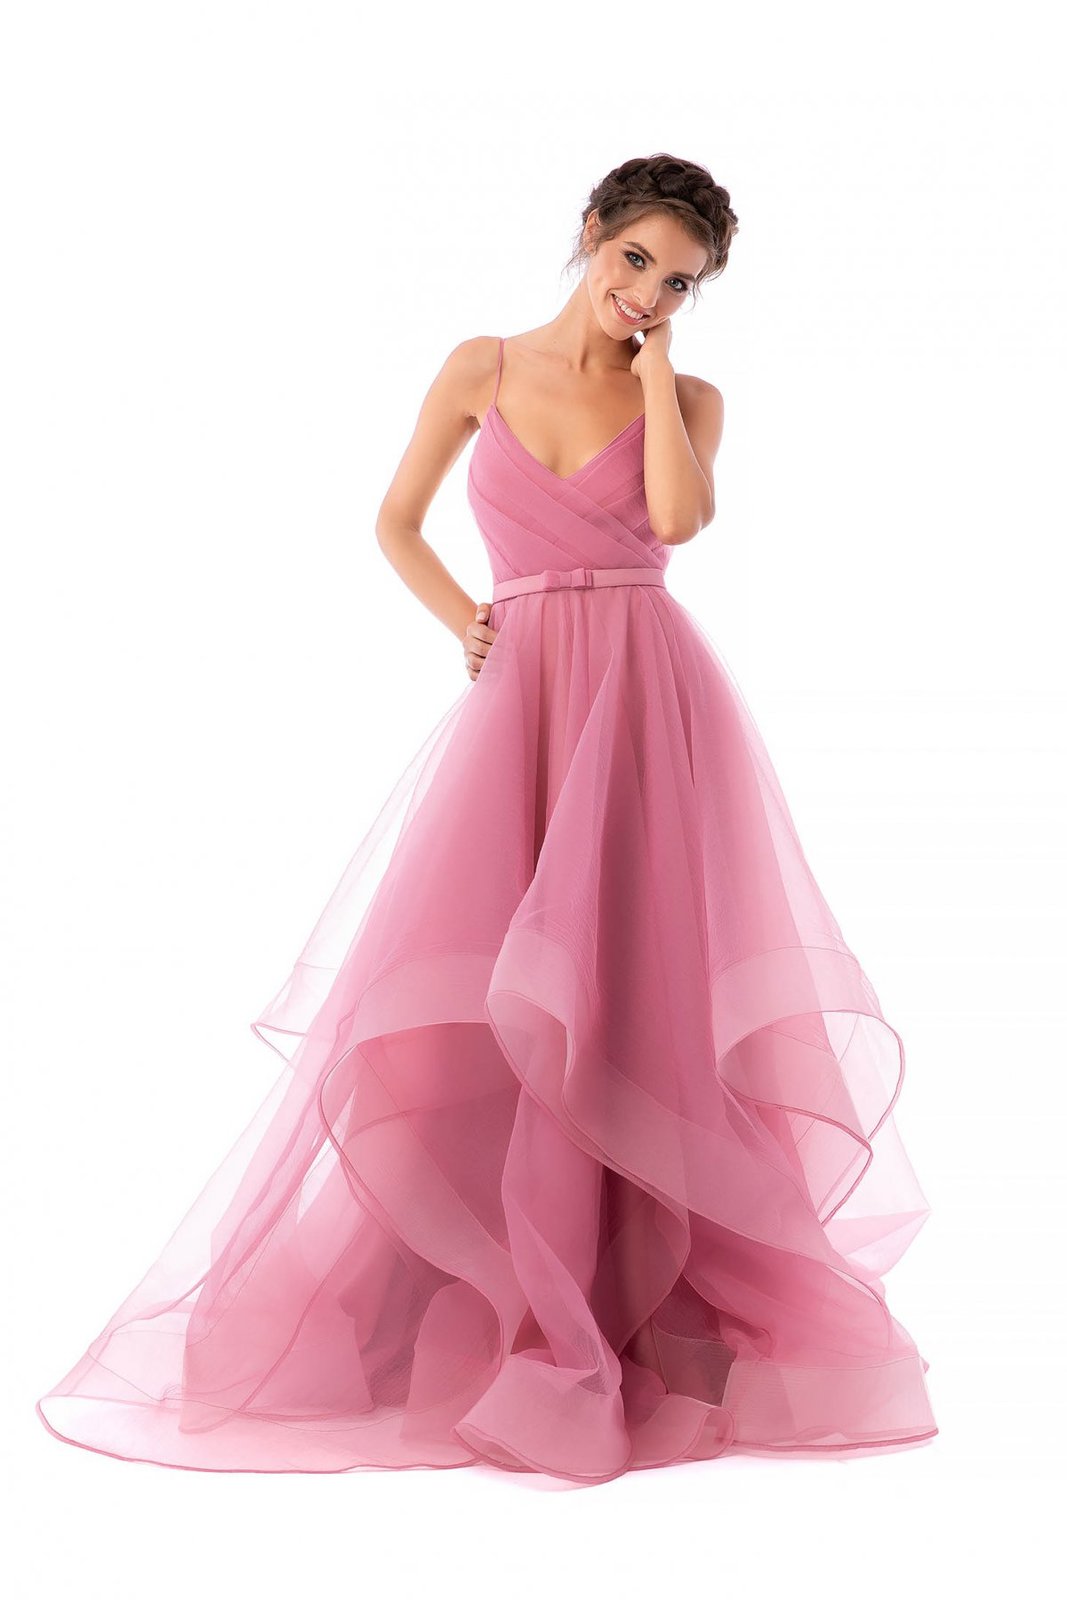 Világos rózsaszínű Ana Radu ruha luxus fotója